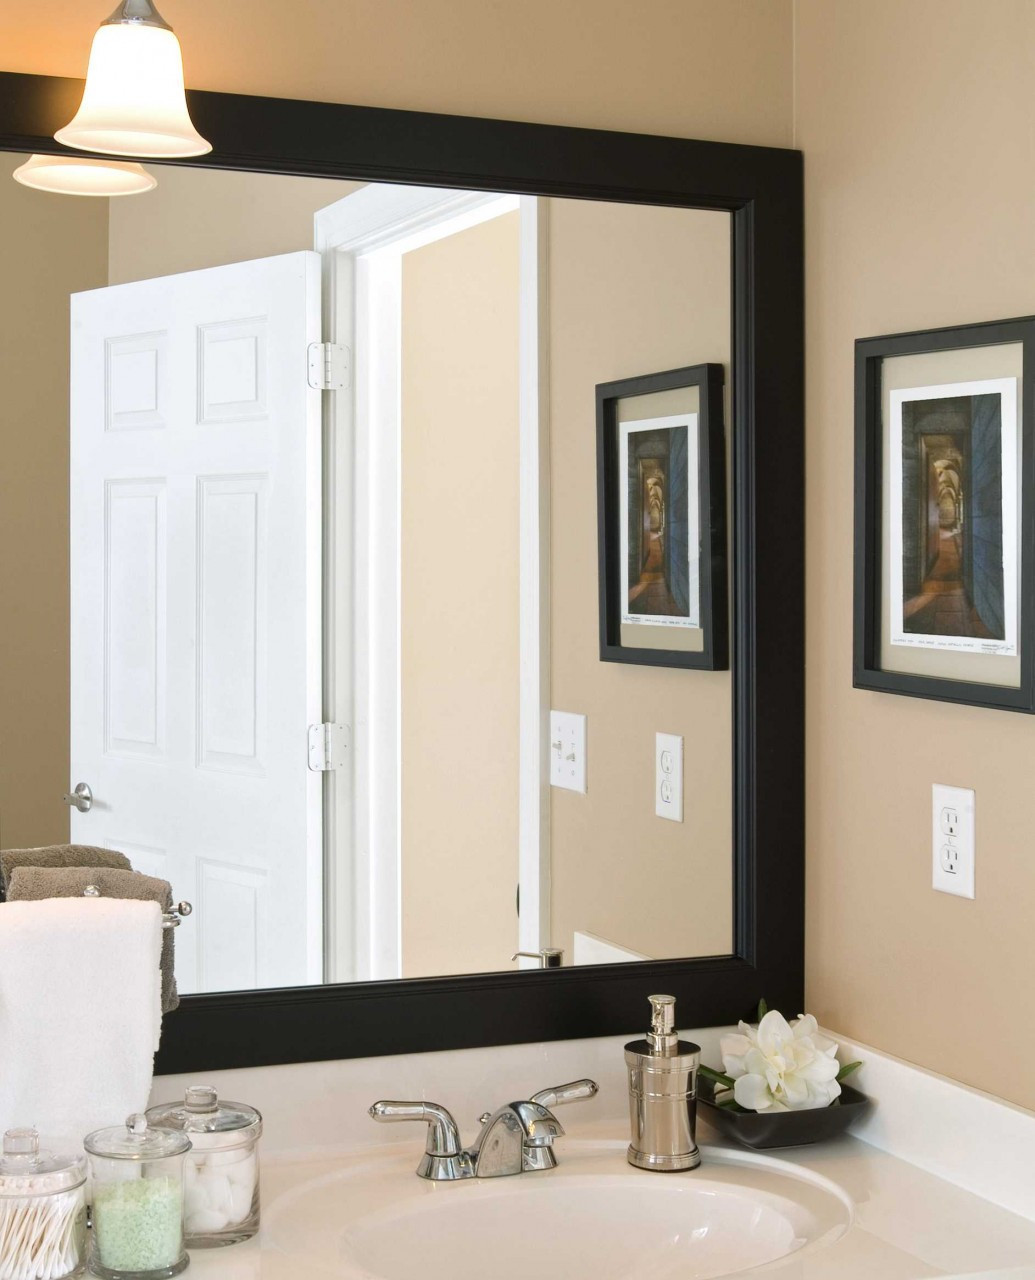 Wooden Bathroom Mirror Ideas - The 25+ best Round bathroom mirror ideas